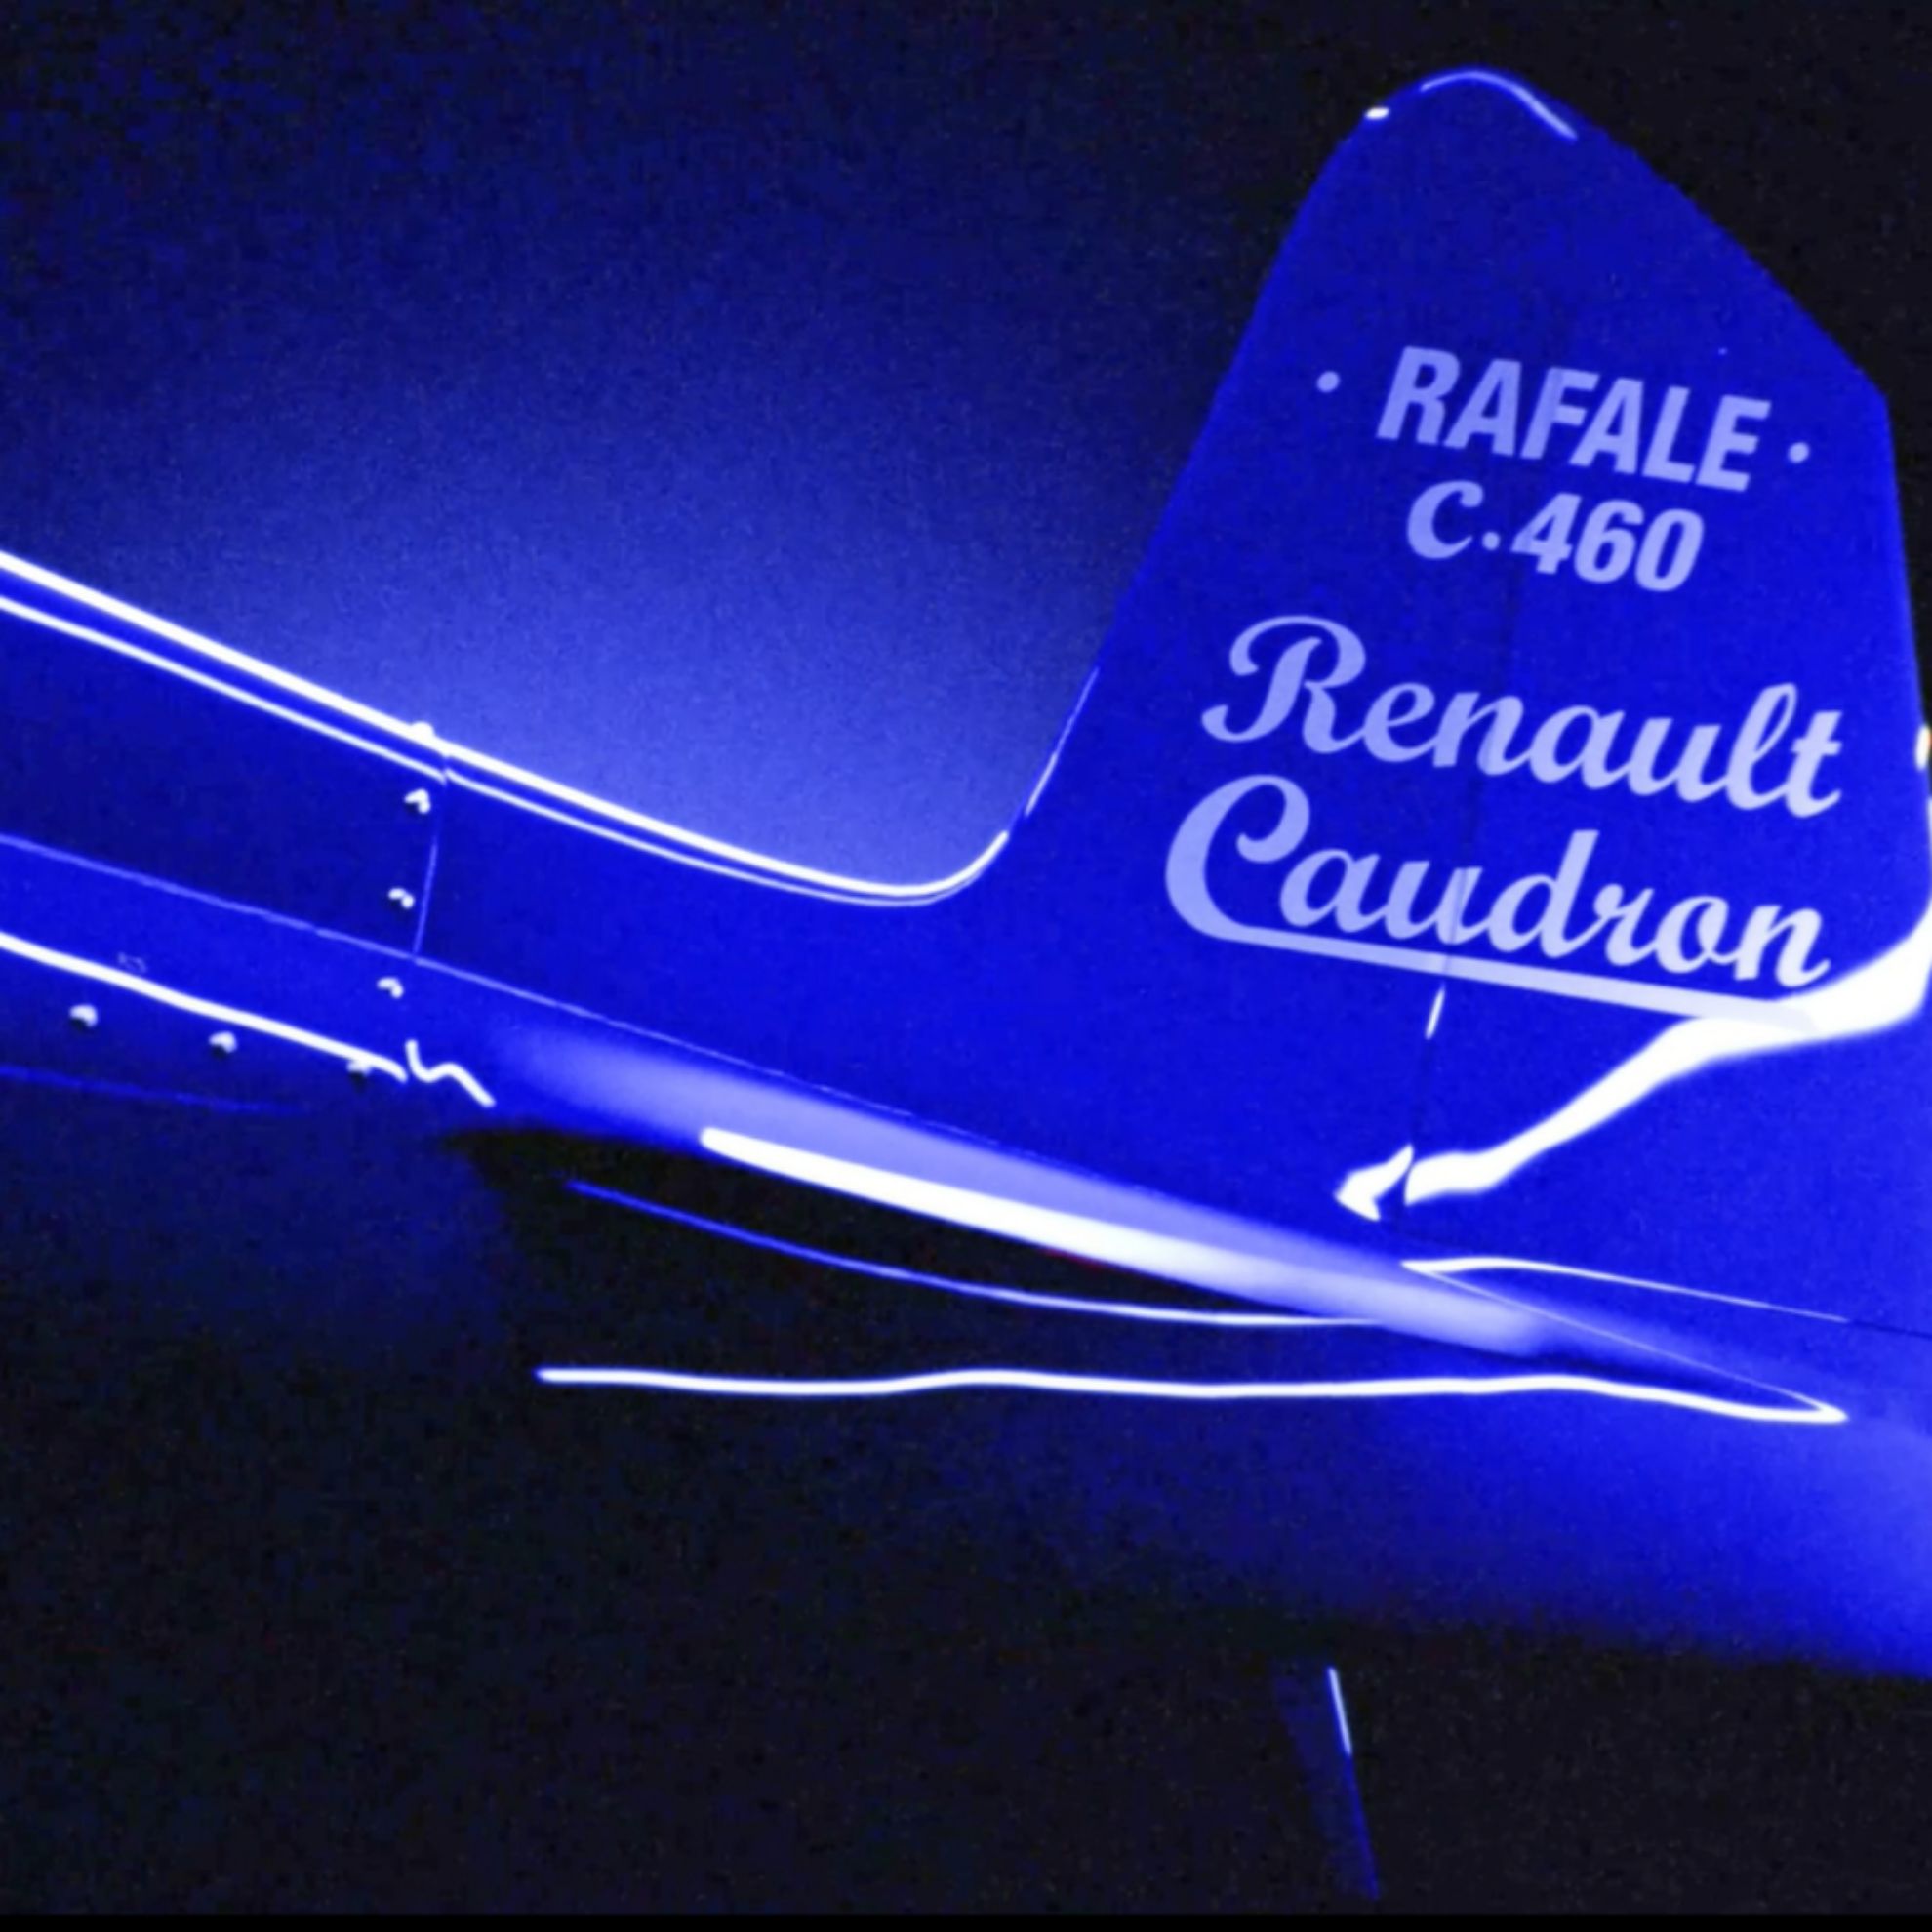 Renautl fabricó motores de aviación a principios del siglo XX.